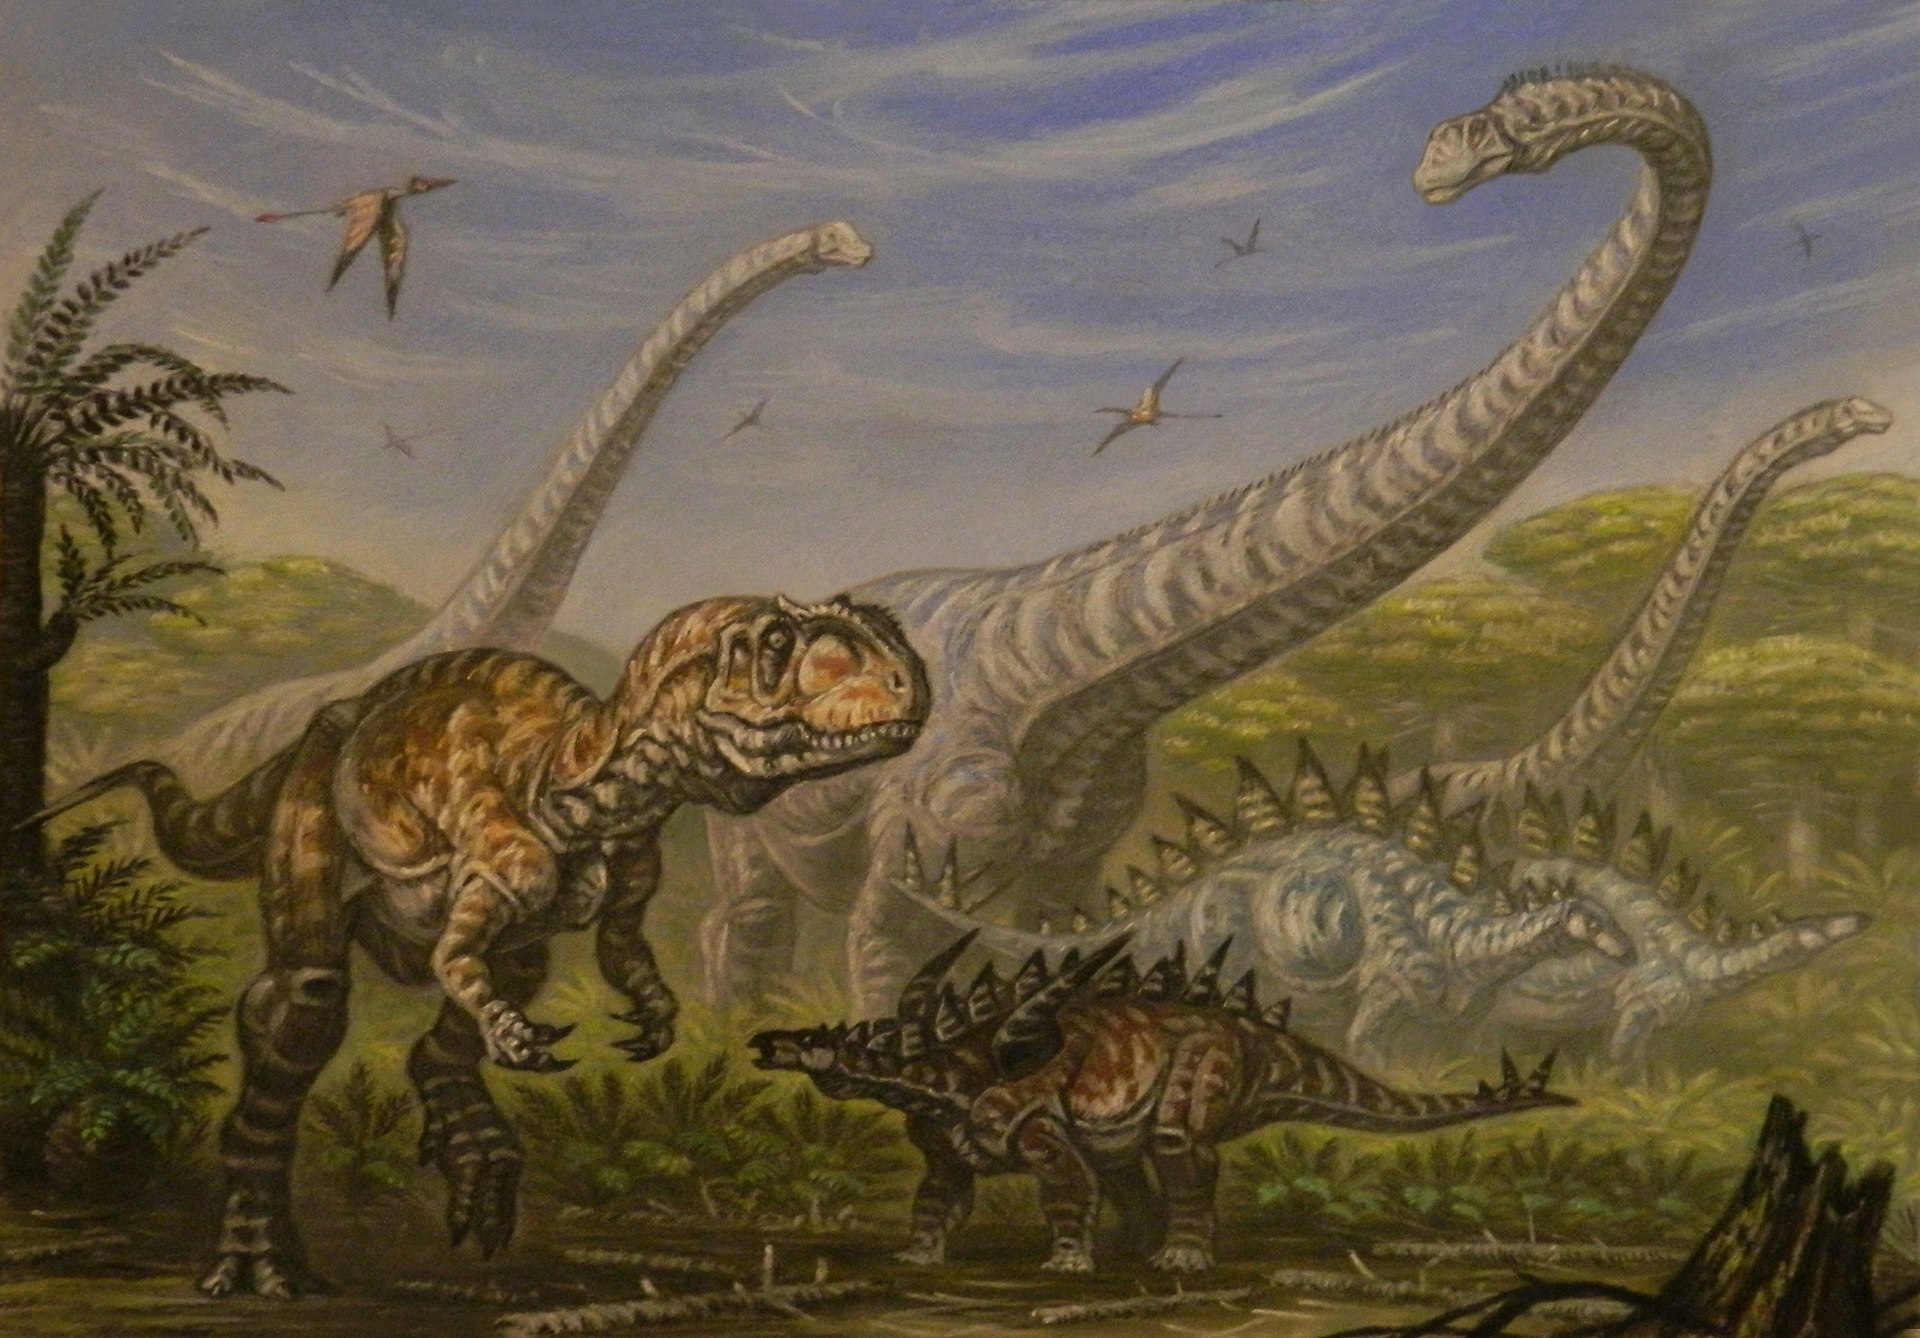 Dinosauří megafauna středně až pozdně jurských ekosystémů geologického souvrství Ša-si-miao (Shaximiao) na území čínské provincie S’-čchuan. Je možné, že právě fosilní kosti těchto dinosaurů stojí za starověkými mýty a legendami o dracích, které jsou